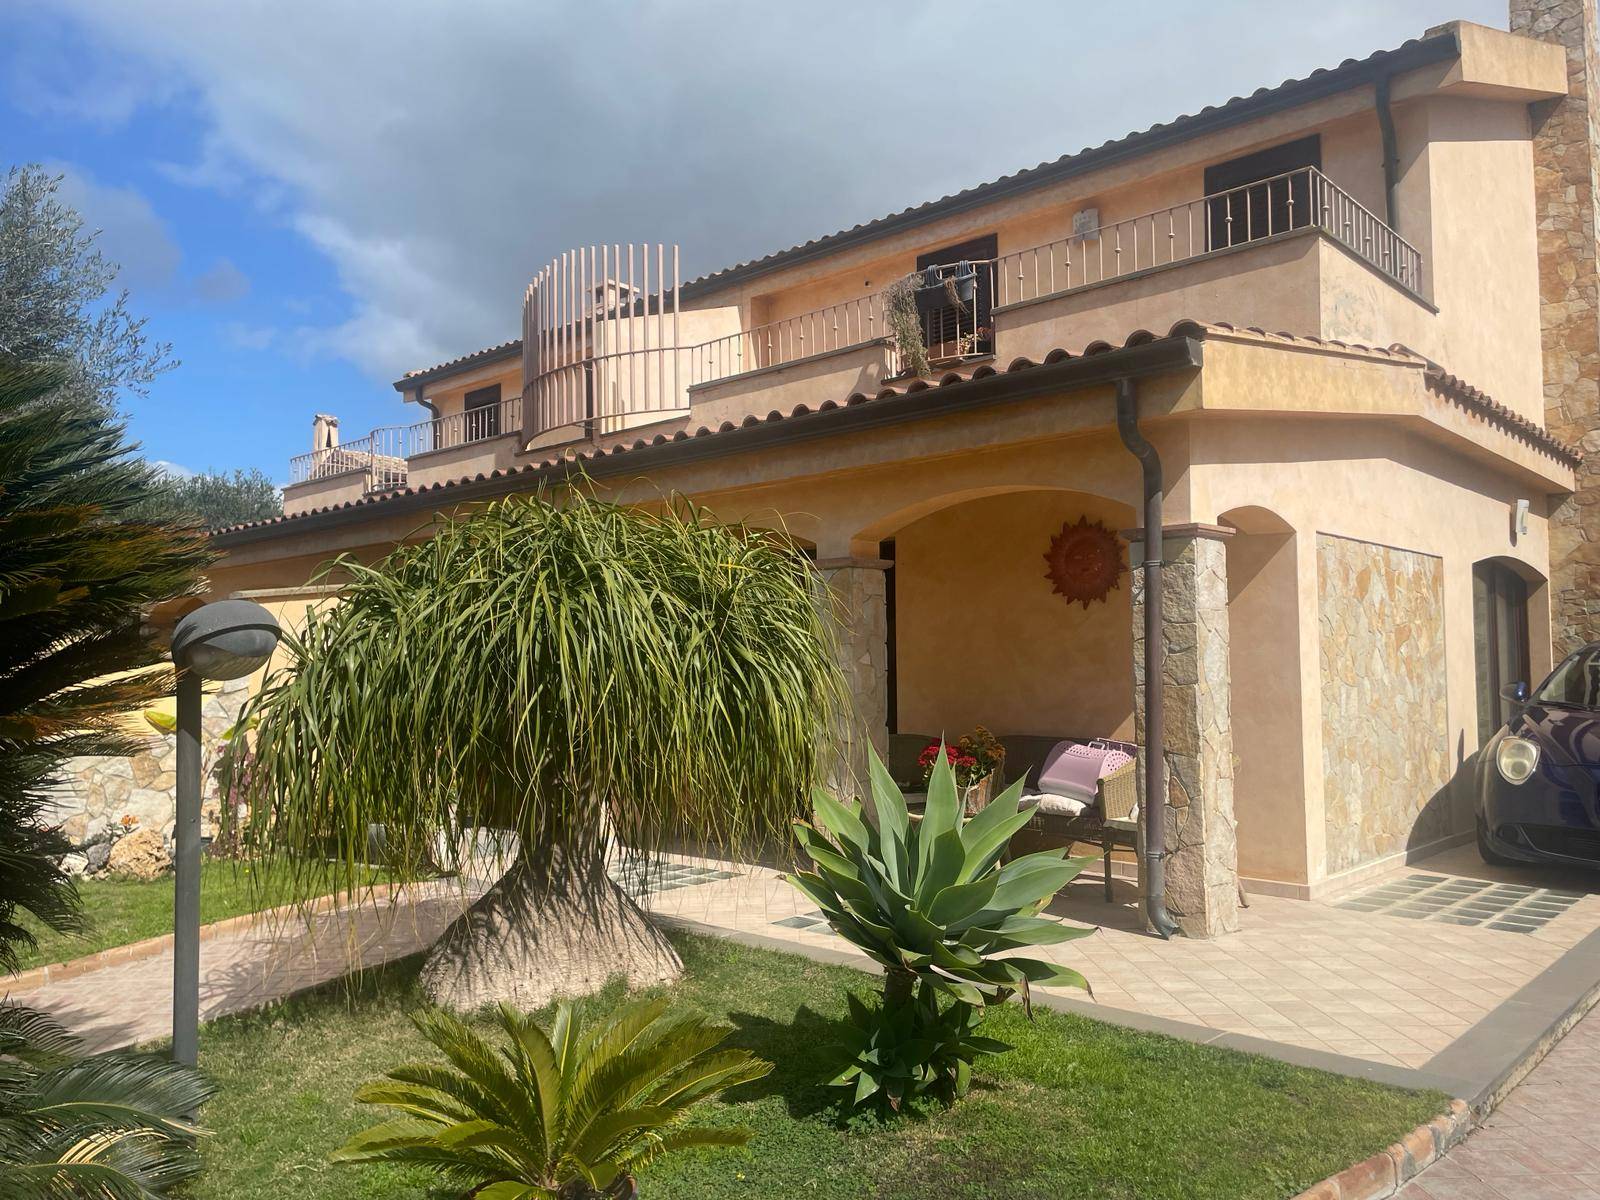 Villa in vendita a Quartu Sant'Elena, 5 locali, zona Località: Bellavista-IsPardinas, prezzo € 330.000 | PortaleAgenzieImmobiliari.it